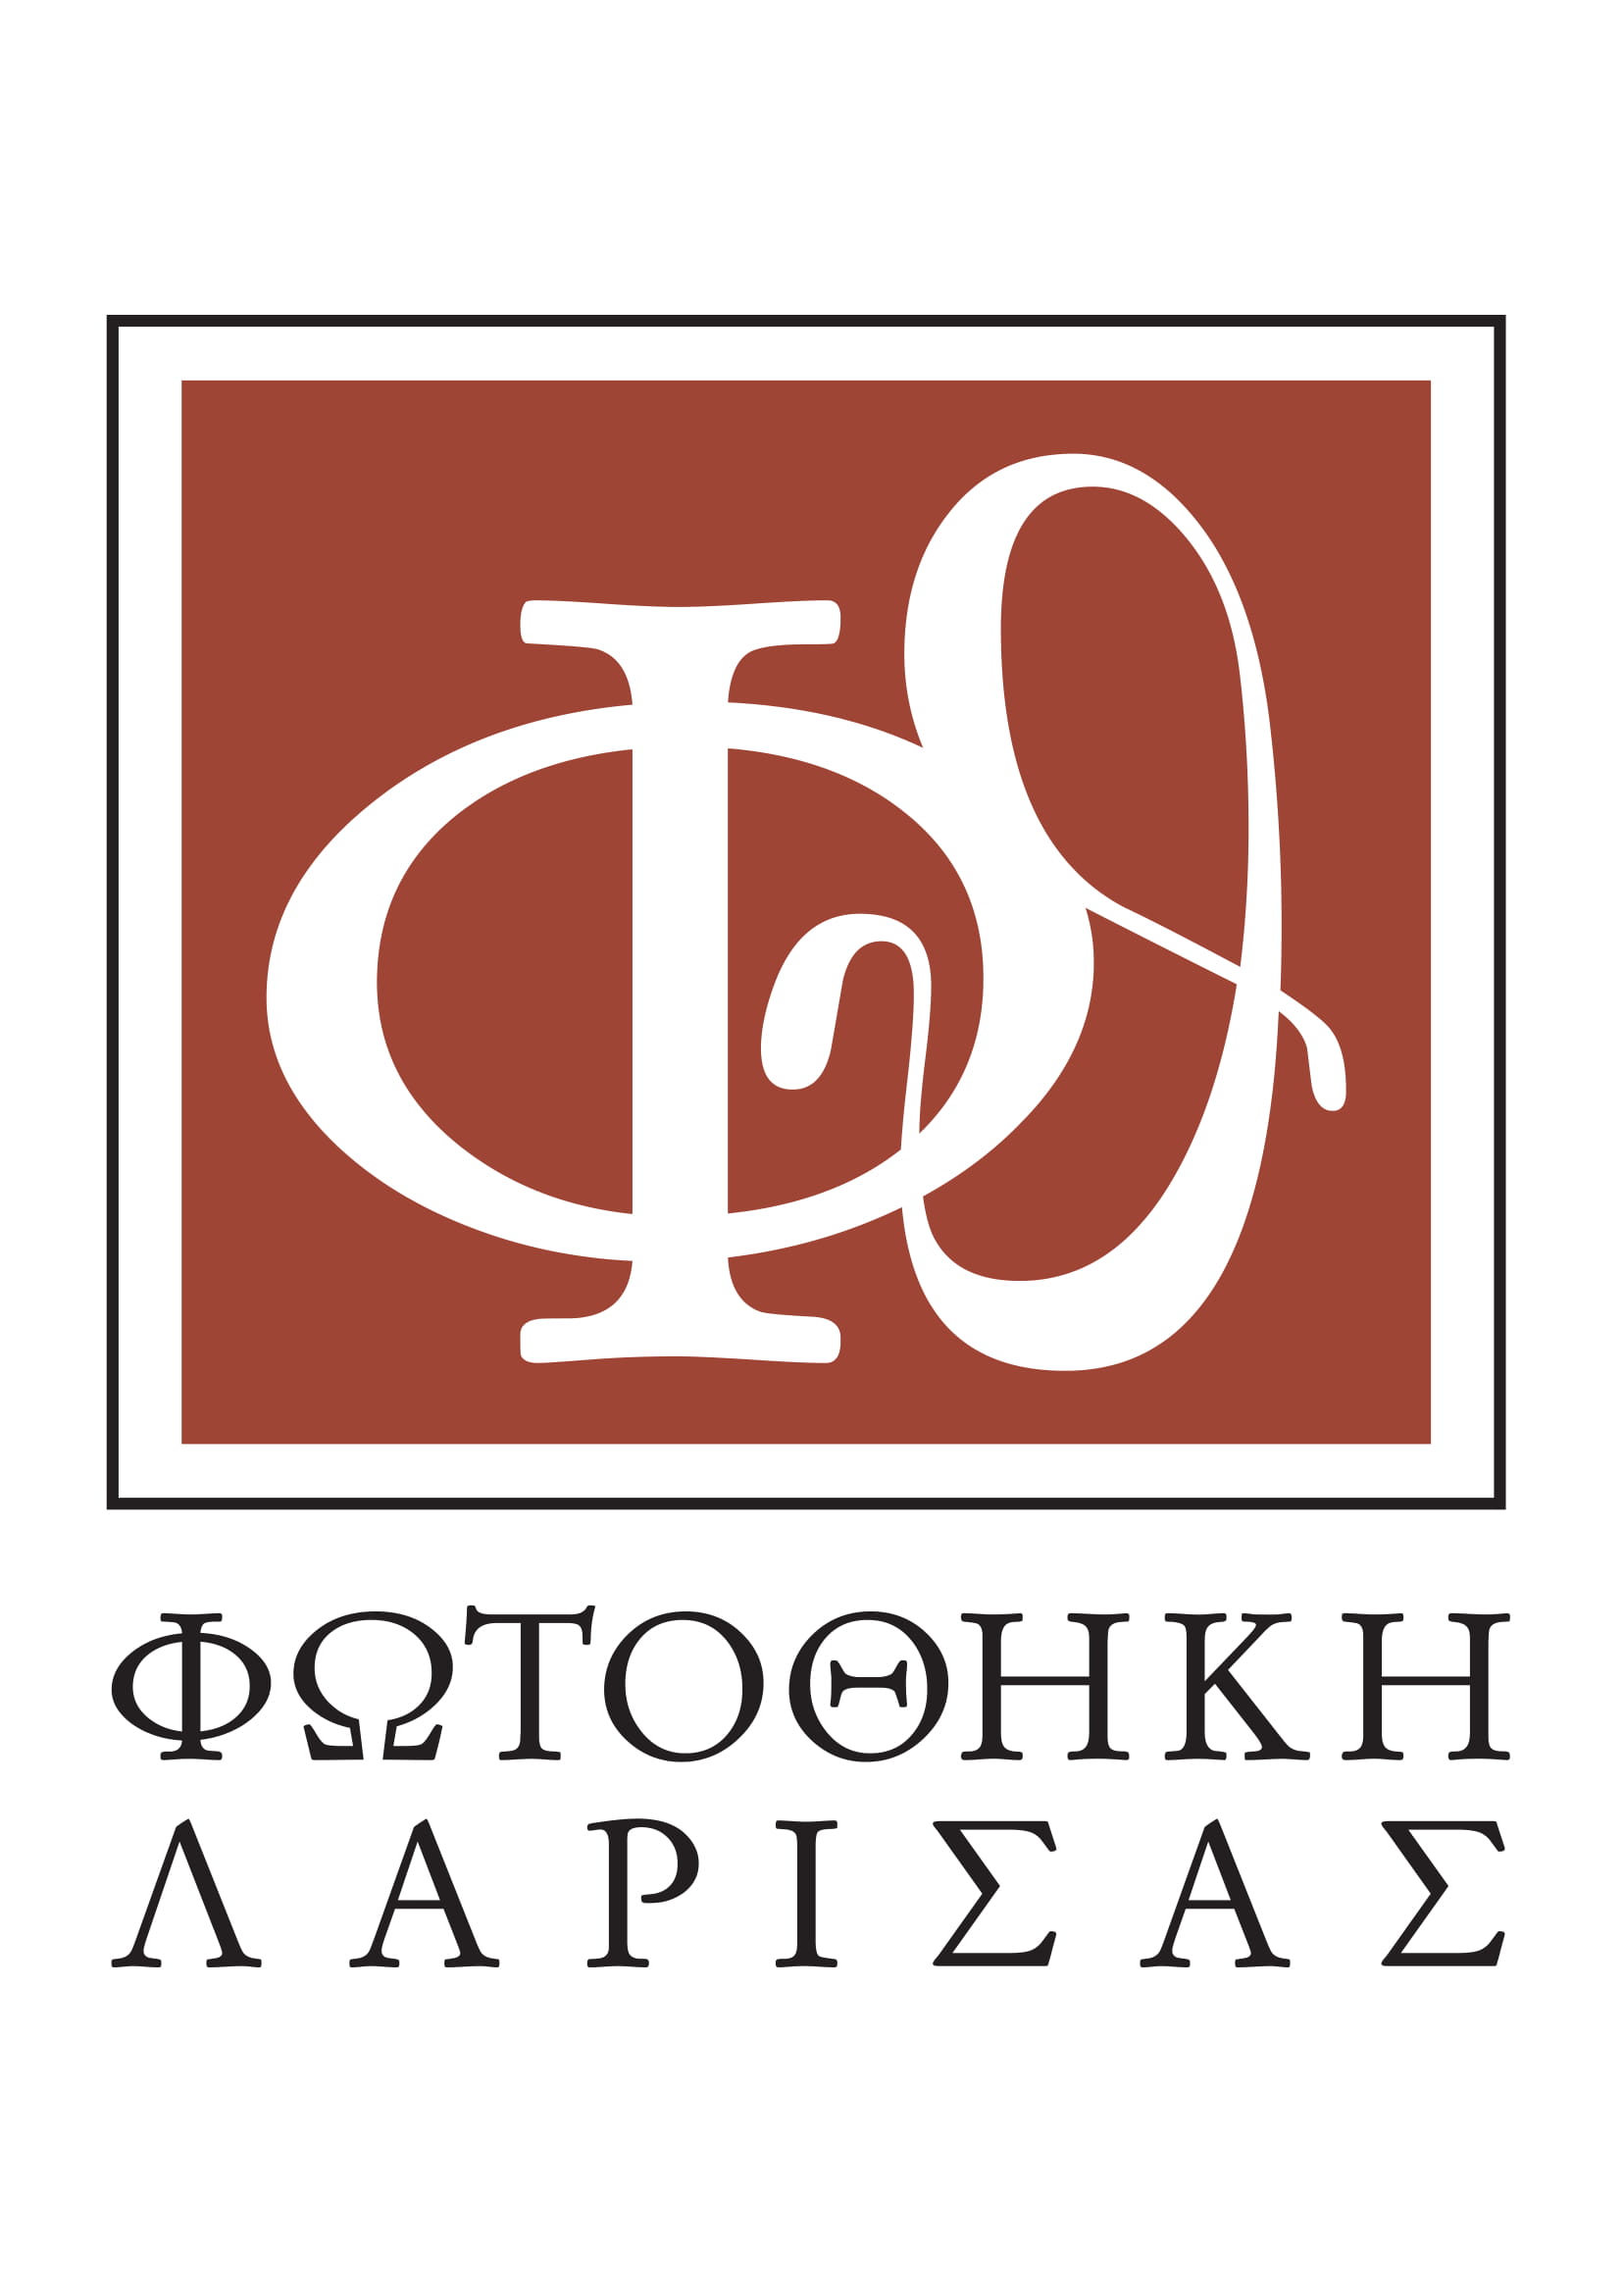 fotothiki_logo